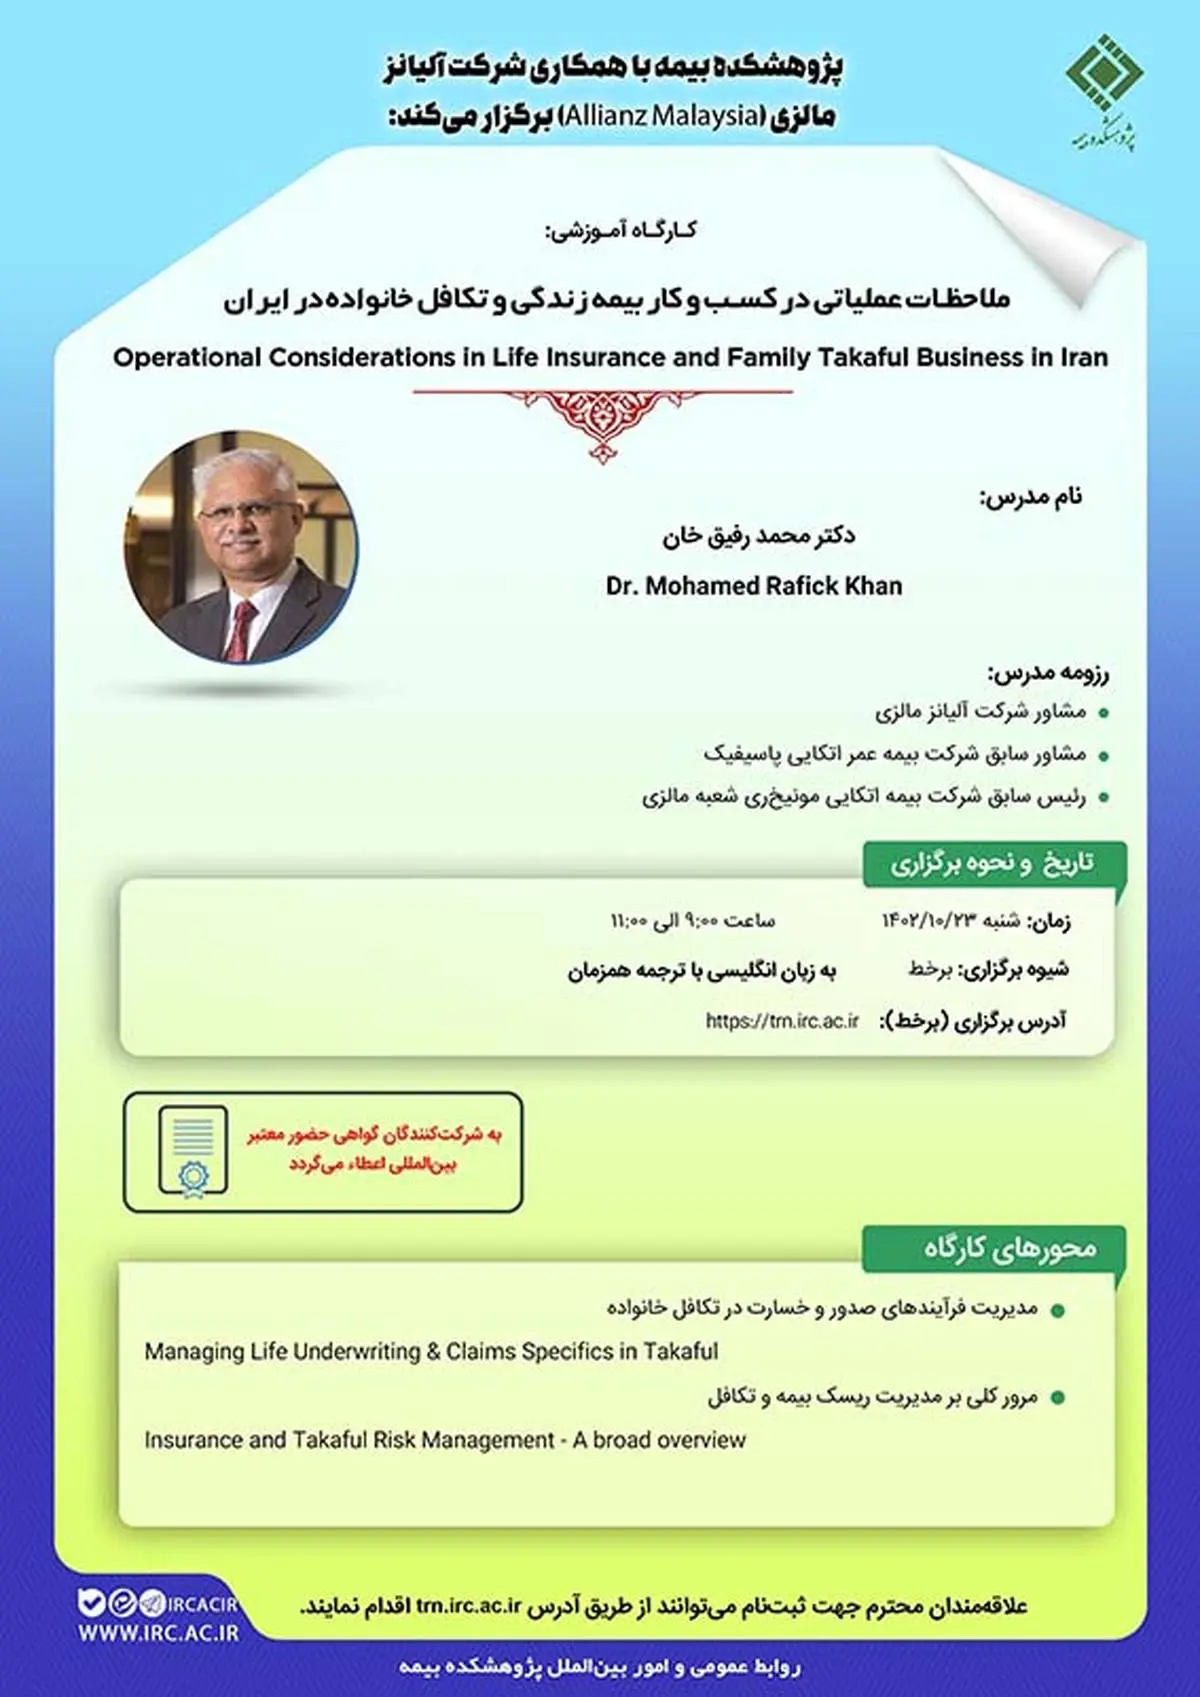 ​کارگاه‌‌ آموزشی ملاحظات عملیاتی در کسب‌وکار بیمه زندگی و تکافل خانواده در ایران

